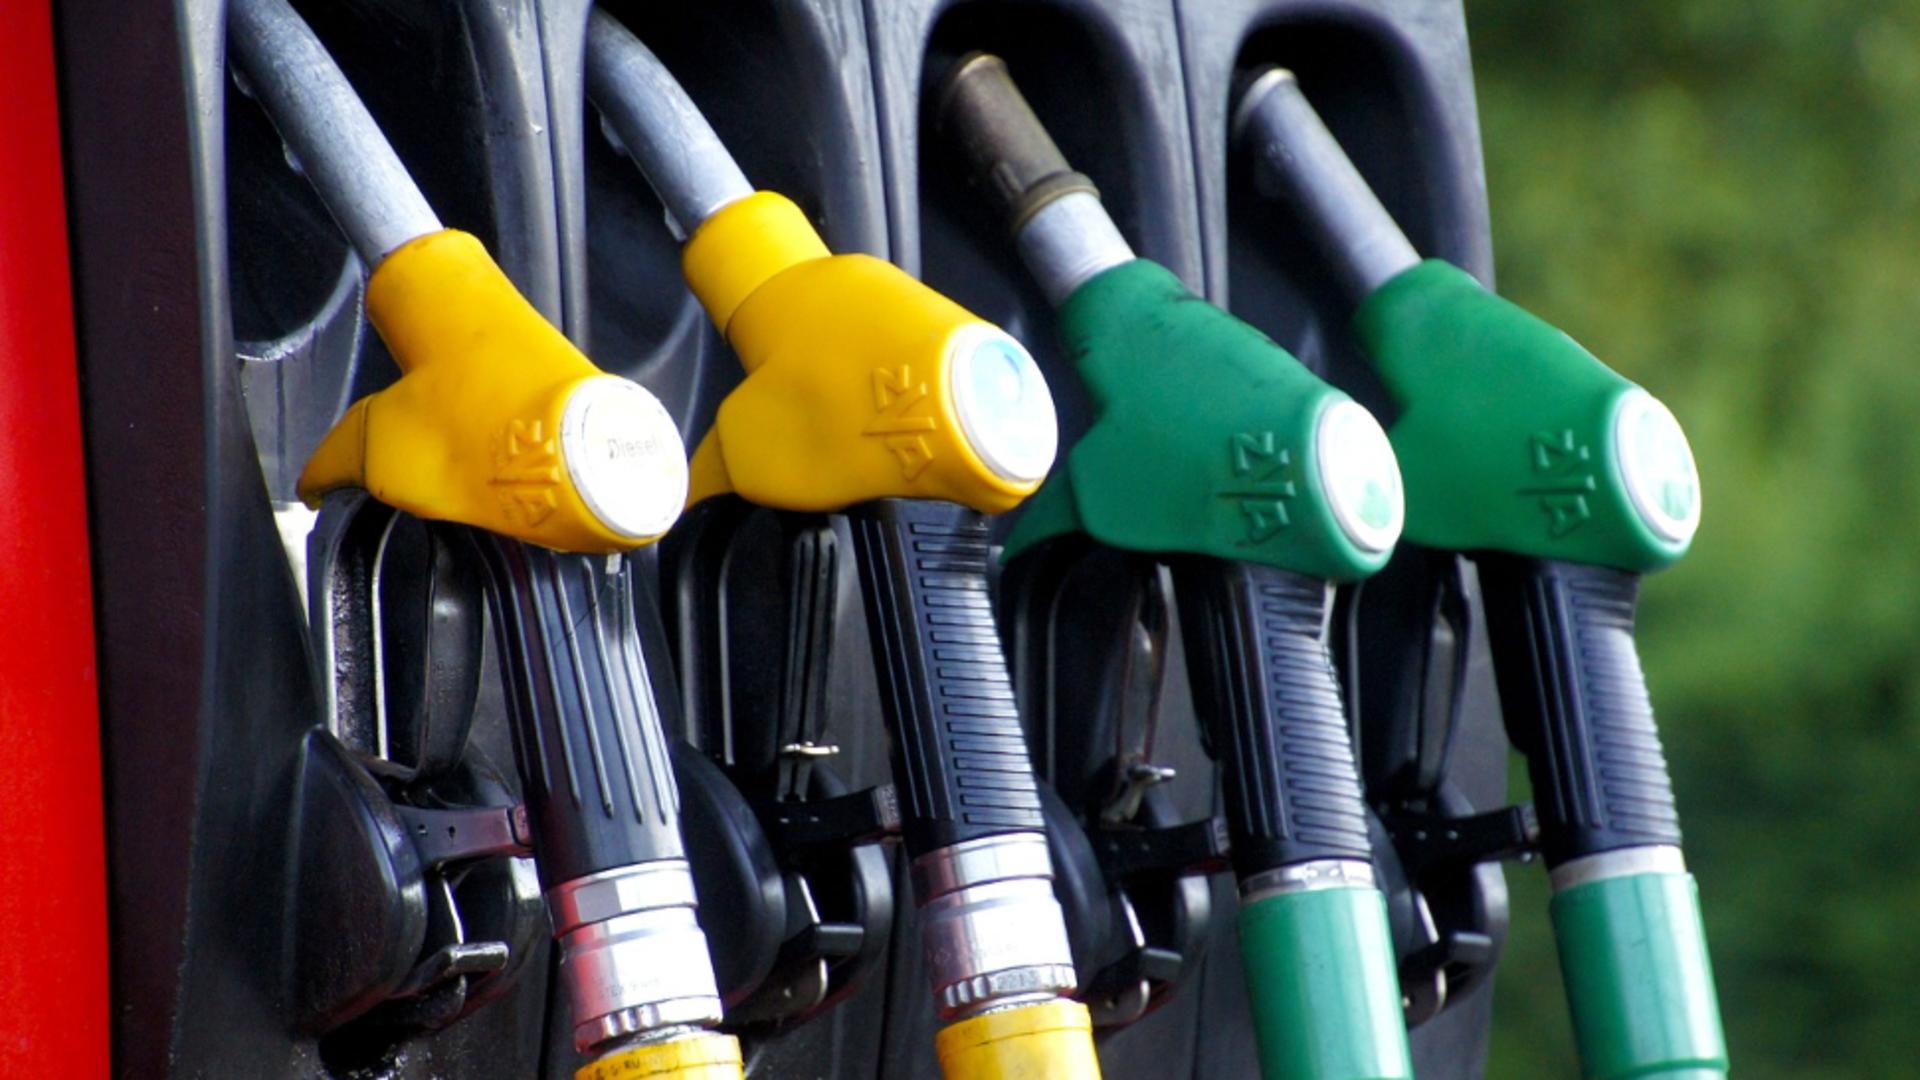 Se consumă benzina premium mai repede decât benzina obișnuită? Mitul, supus testării printr-un experiment video